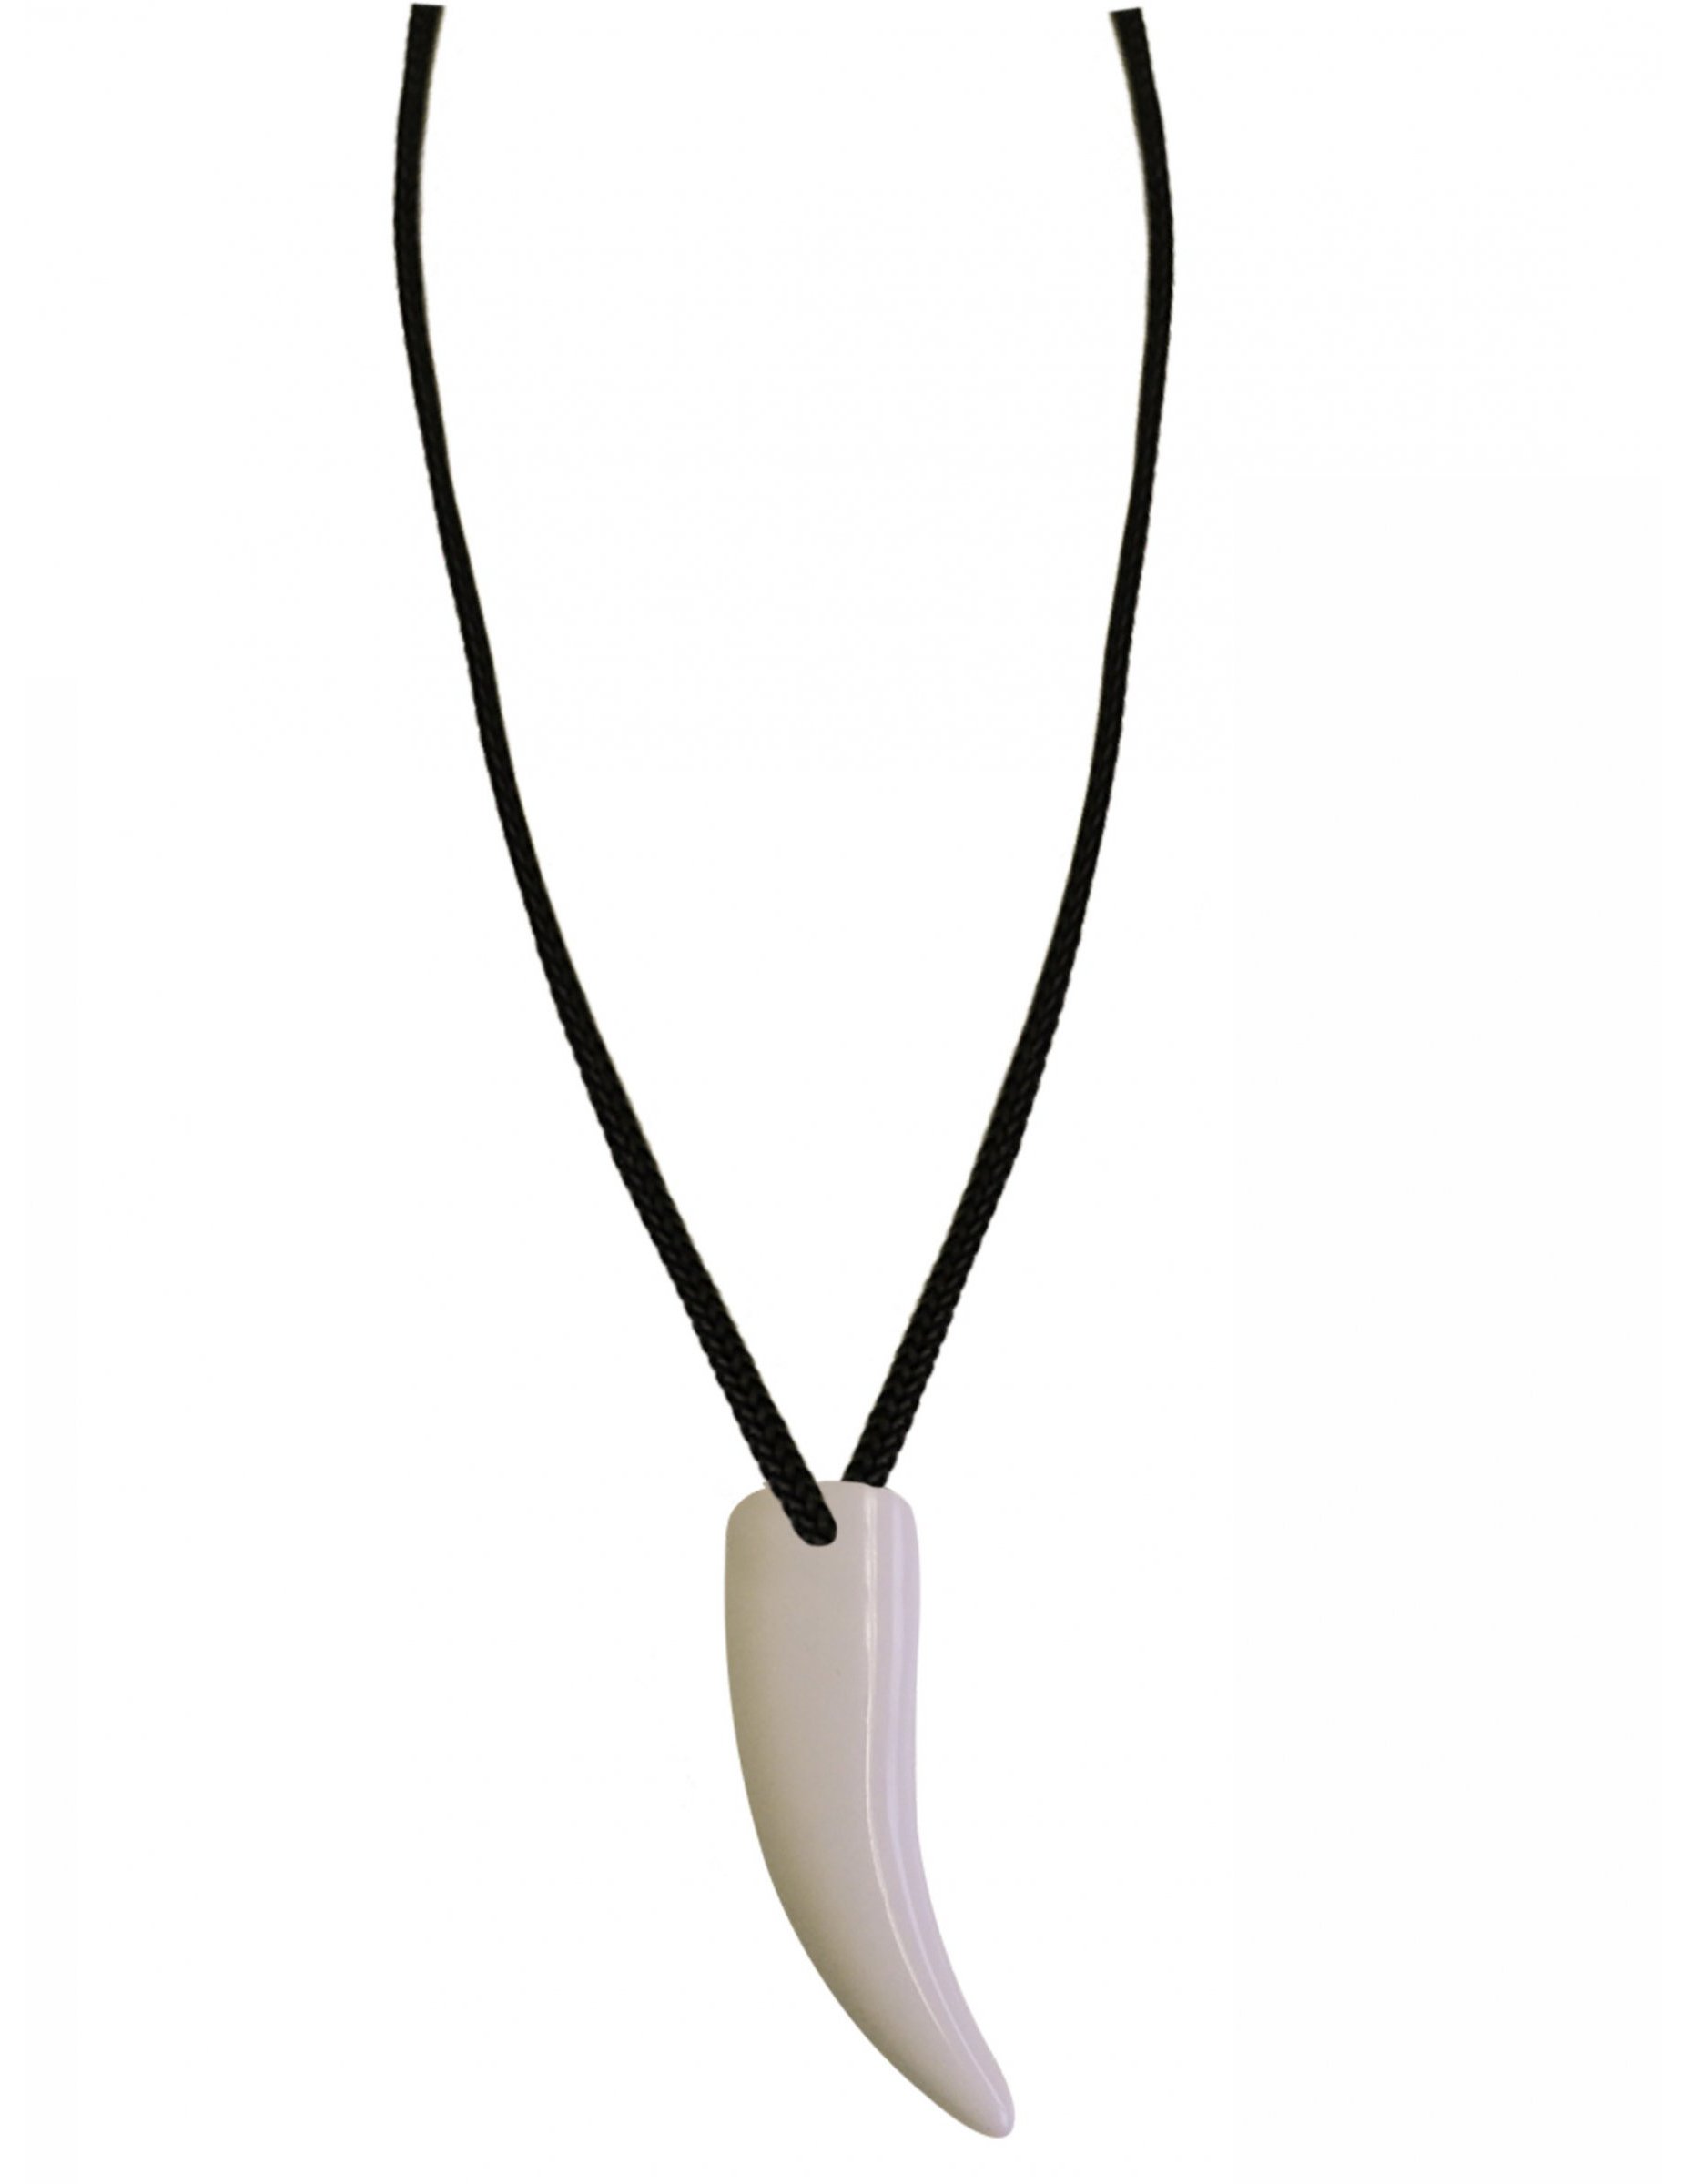 Brice de Nice Zahn-Halskette schwarz-weiss von PTIT CLOWN